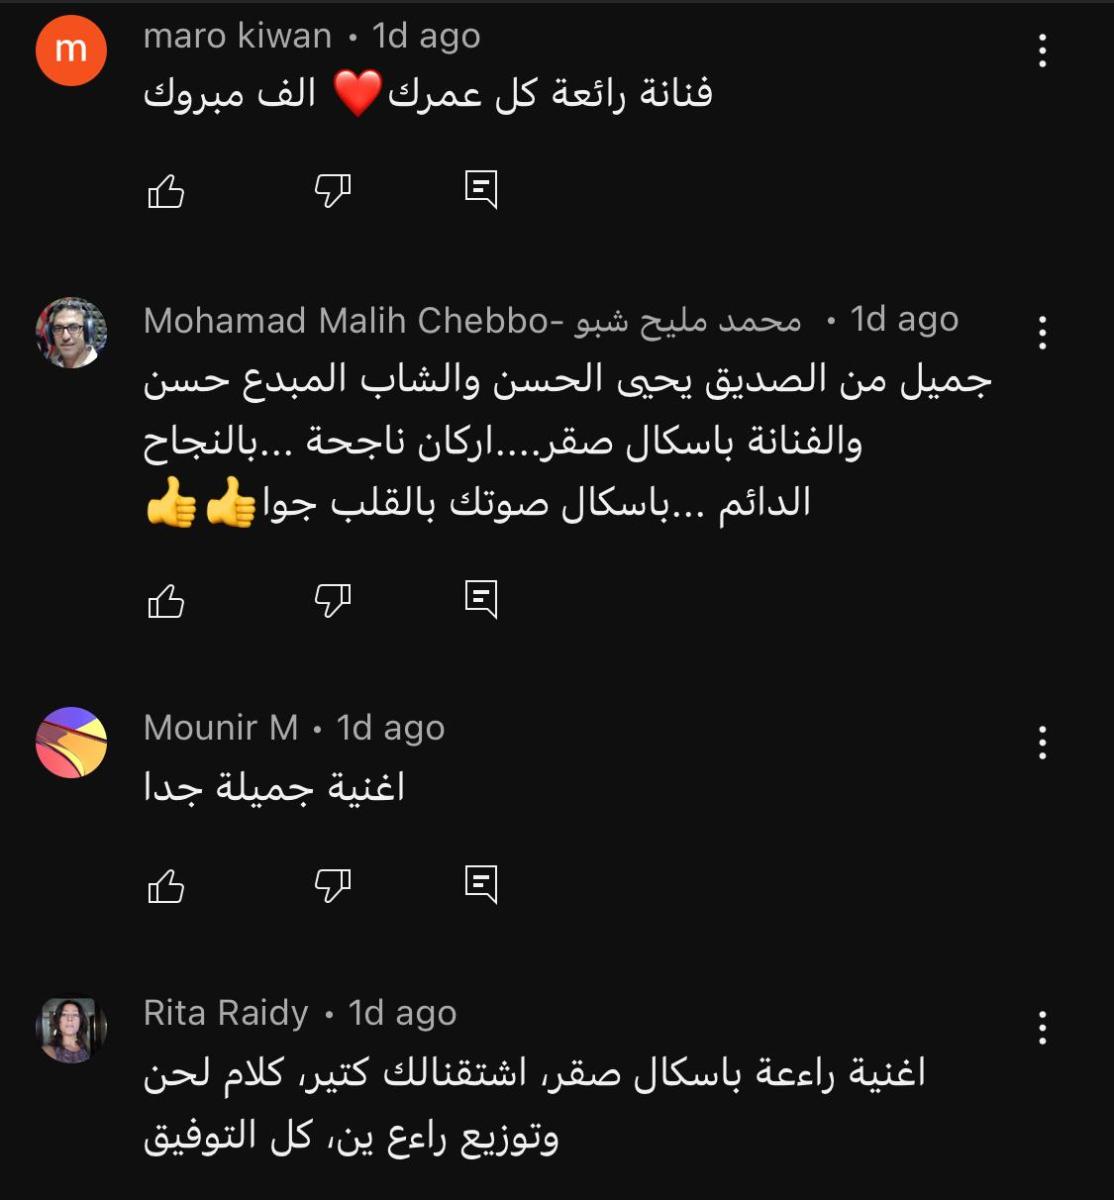 تعليقات على أغنية باسكا صقر الجديدة - يوتيوب